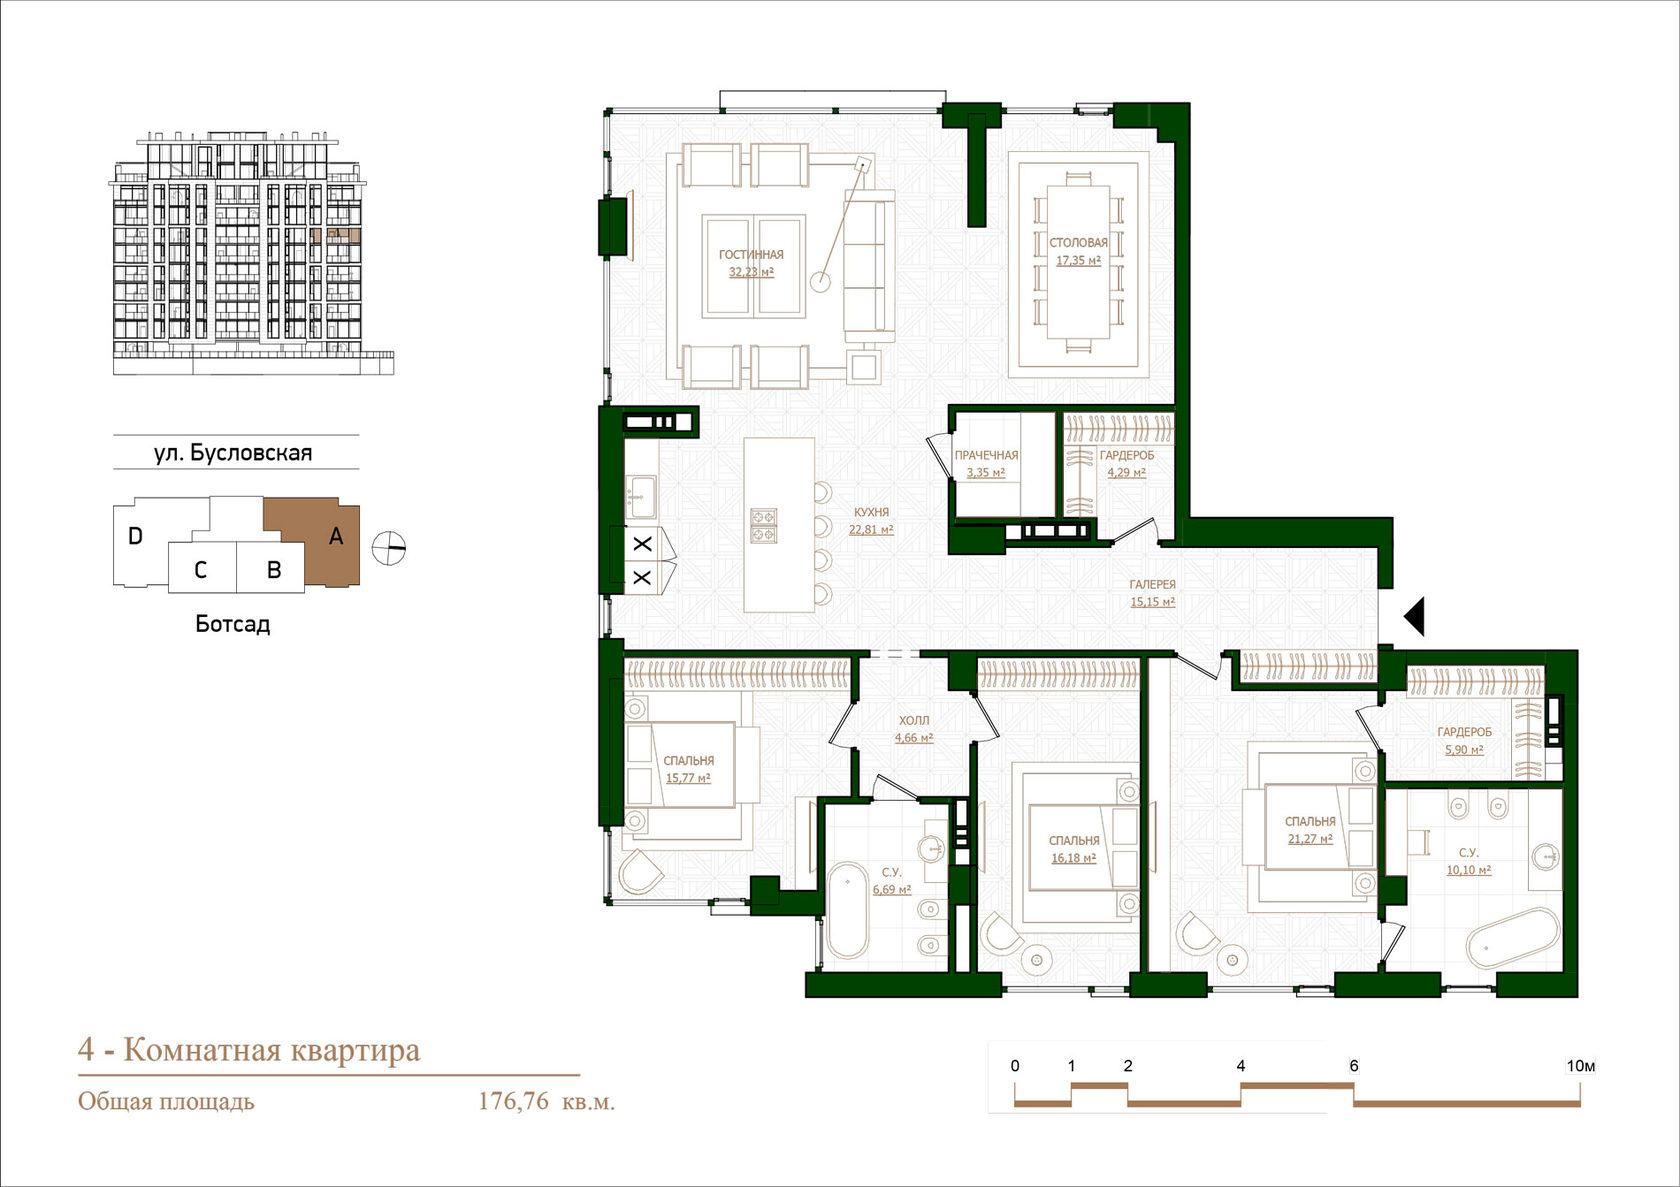 Опция планировки 4 комнатной квартиры 176 кв.м.